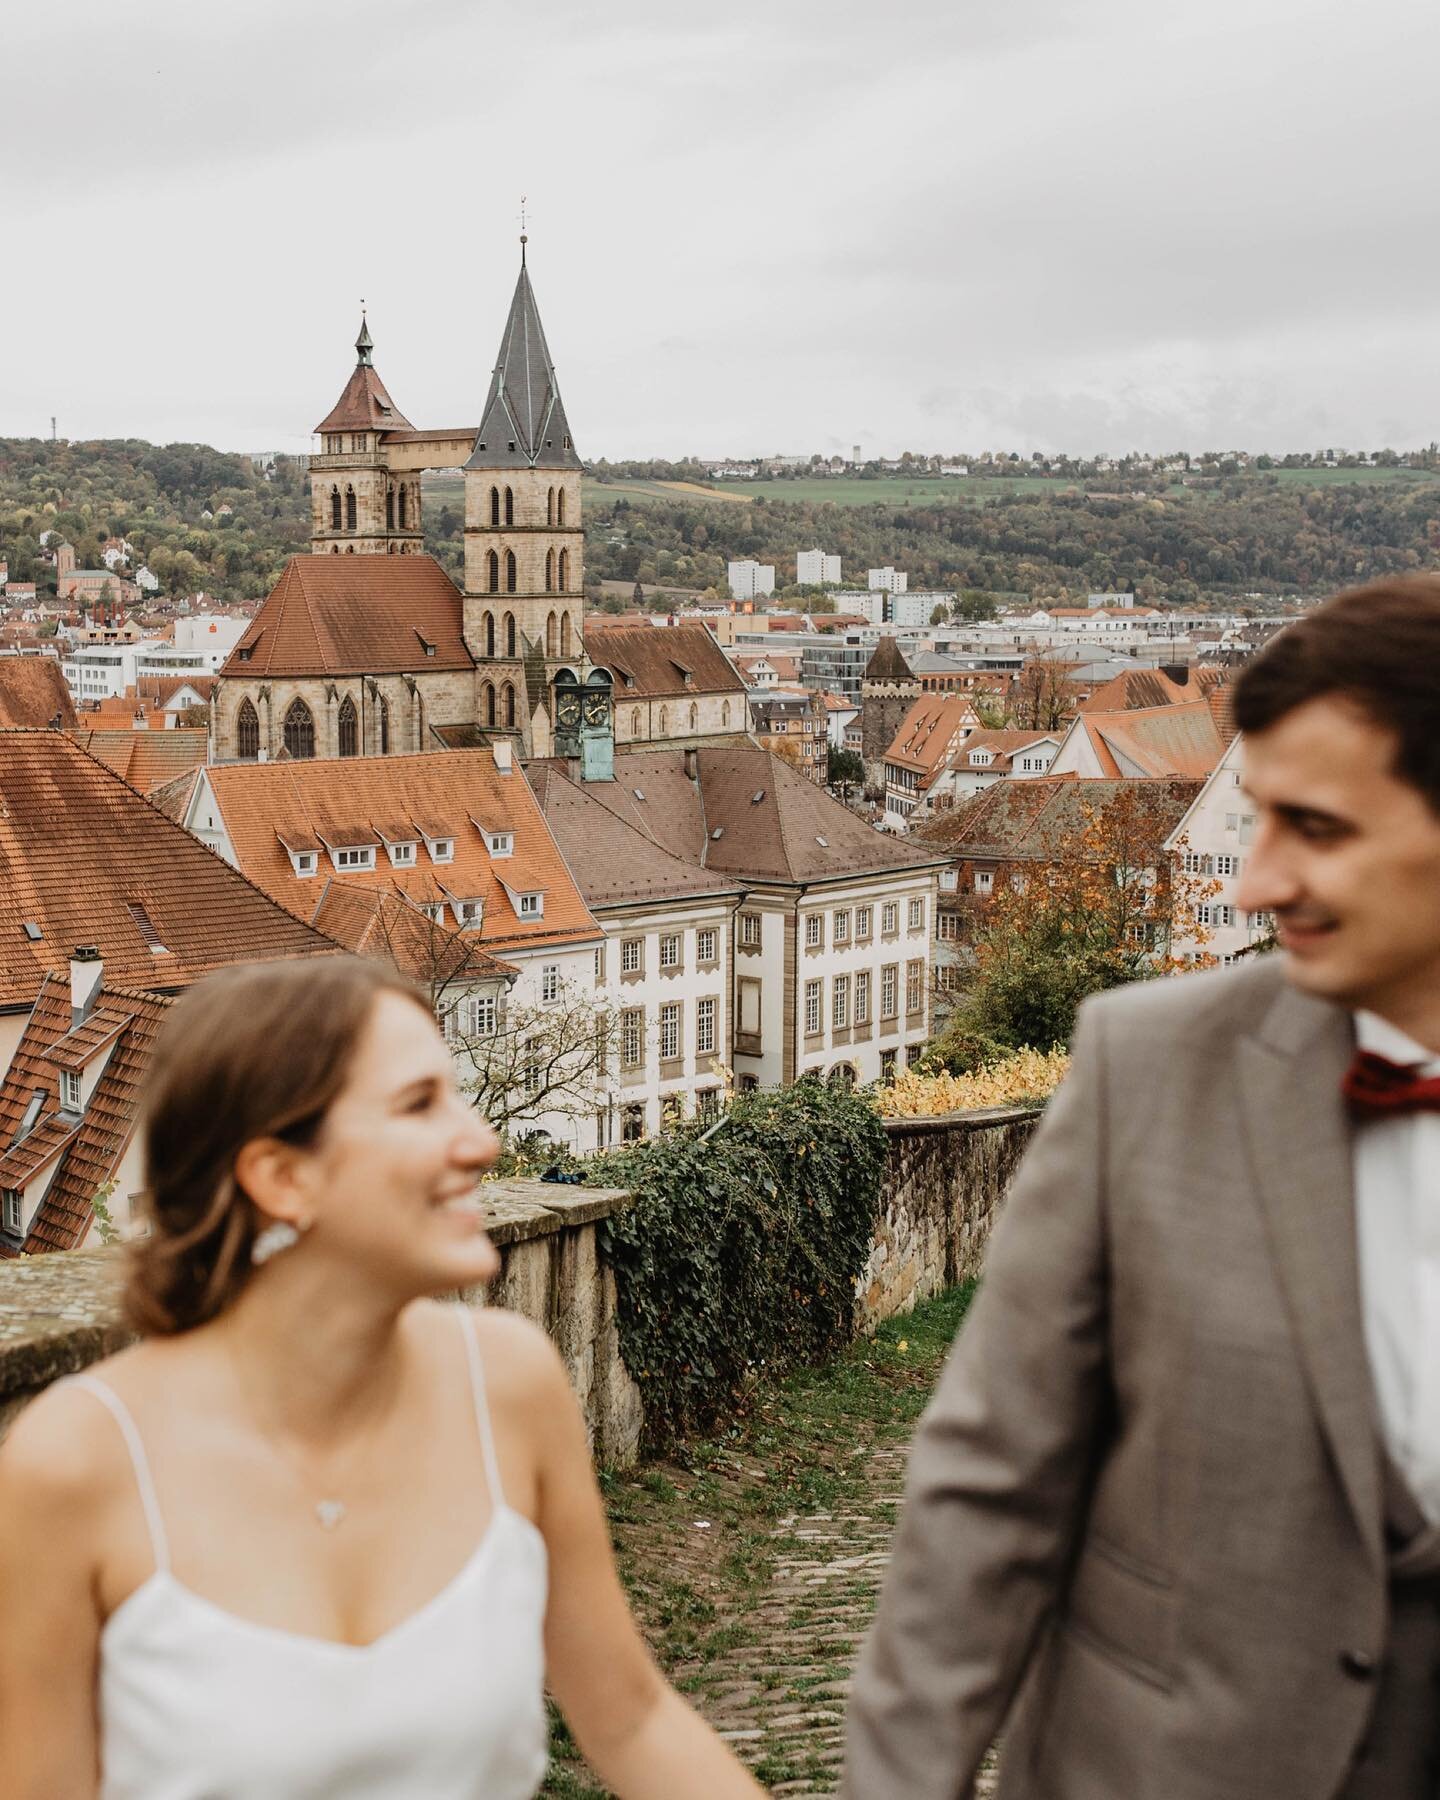 WEDDING WITH A VIEW -
Heiraten &uuml;ber den D&auml;chern von Esslingen auf der Esslinger Burg - der Aufstieg hat sich auf jeden Fall mehr als gelohnt ❤️ 
.
.
#weddingwithaview #weddinginspiration #bridetobe #instabride #weddingesslingen #bridetobe #